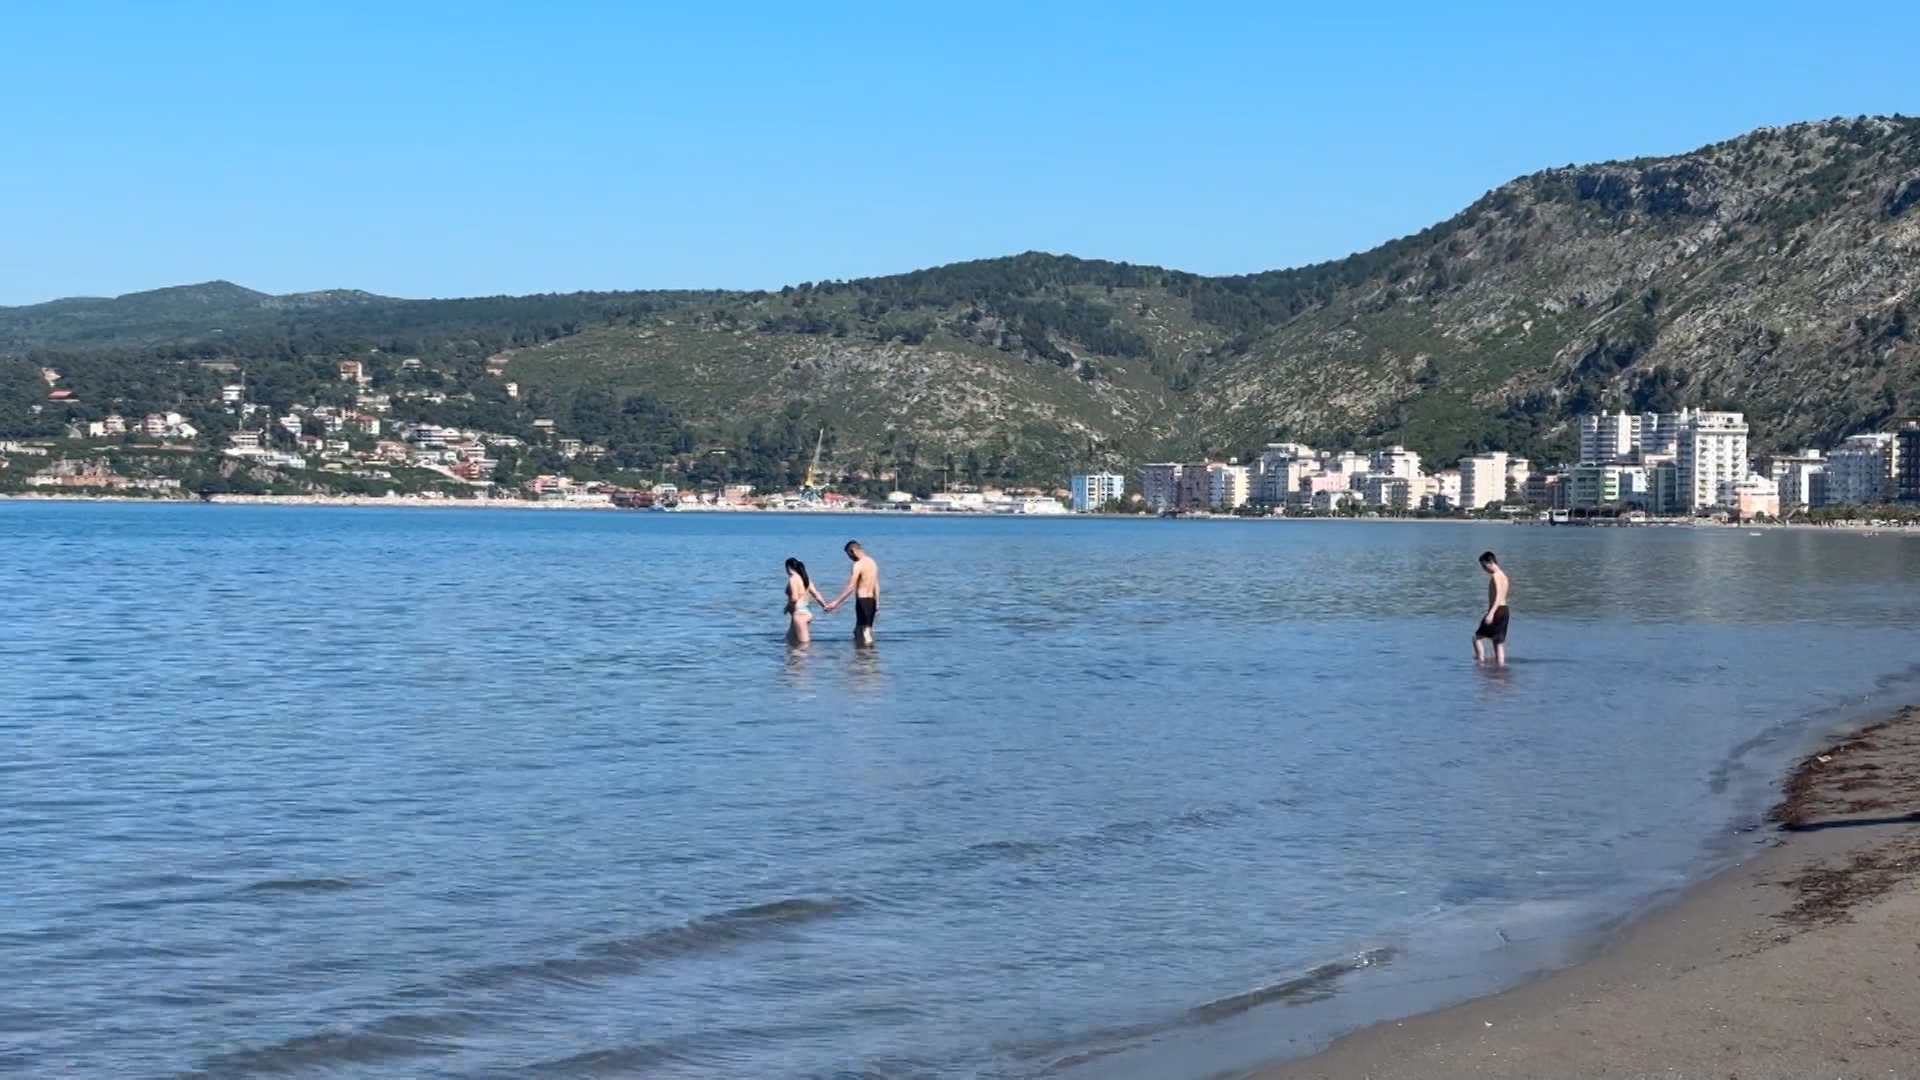 VIDEO/ Plazh në prill, fundjava e gjen Shëngjinin plot me pushues! Uji ende i ftohtë, por më guximtarët ia dalin të notojnë